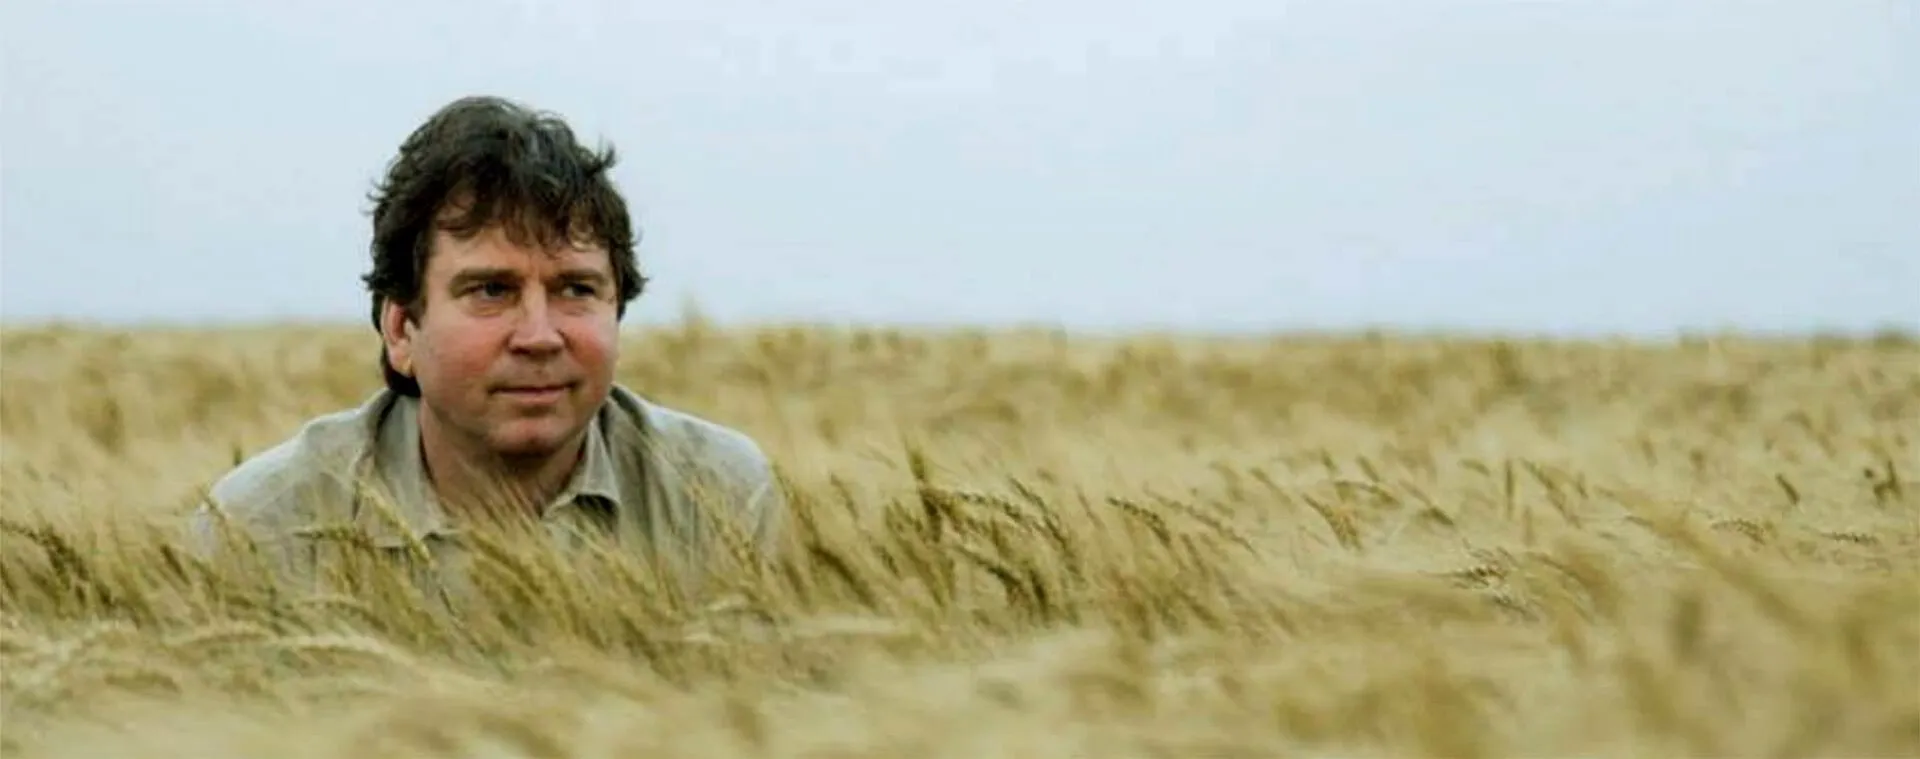 James Carman in wheat